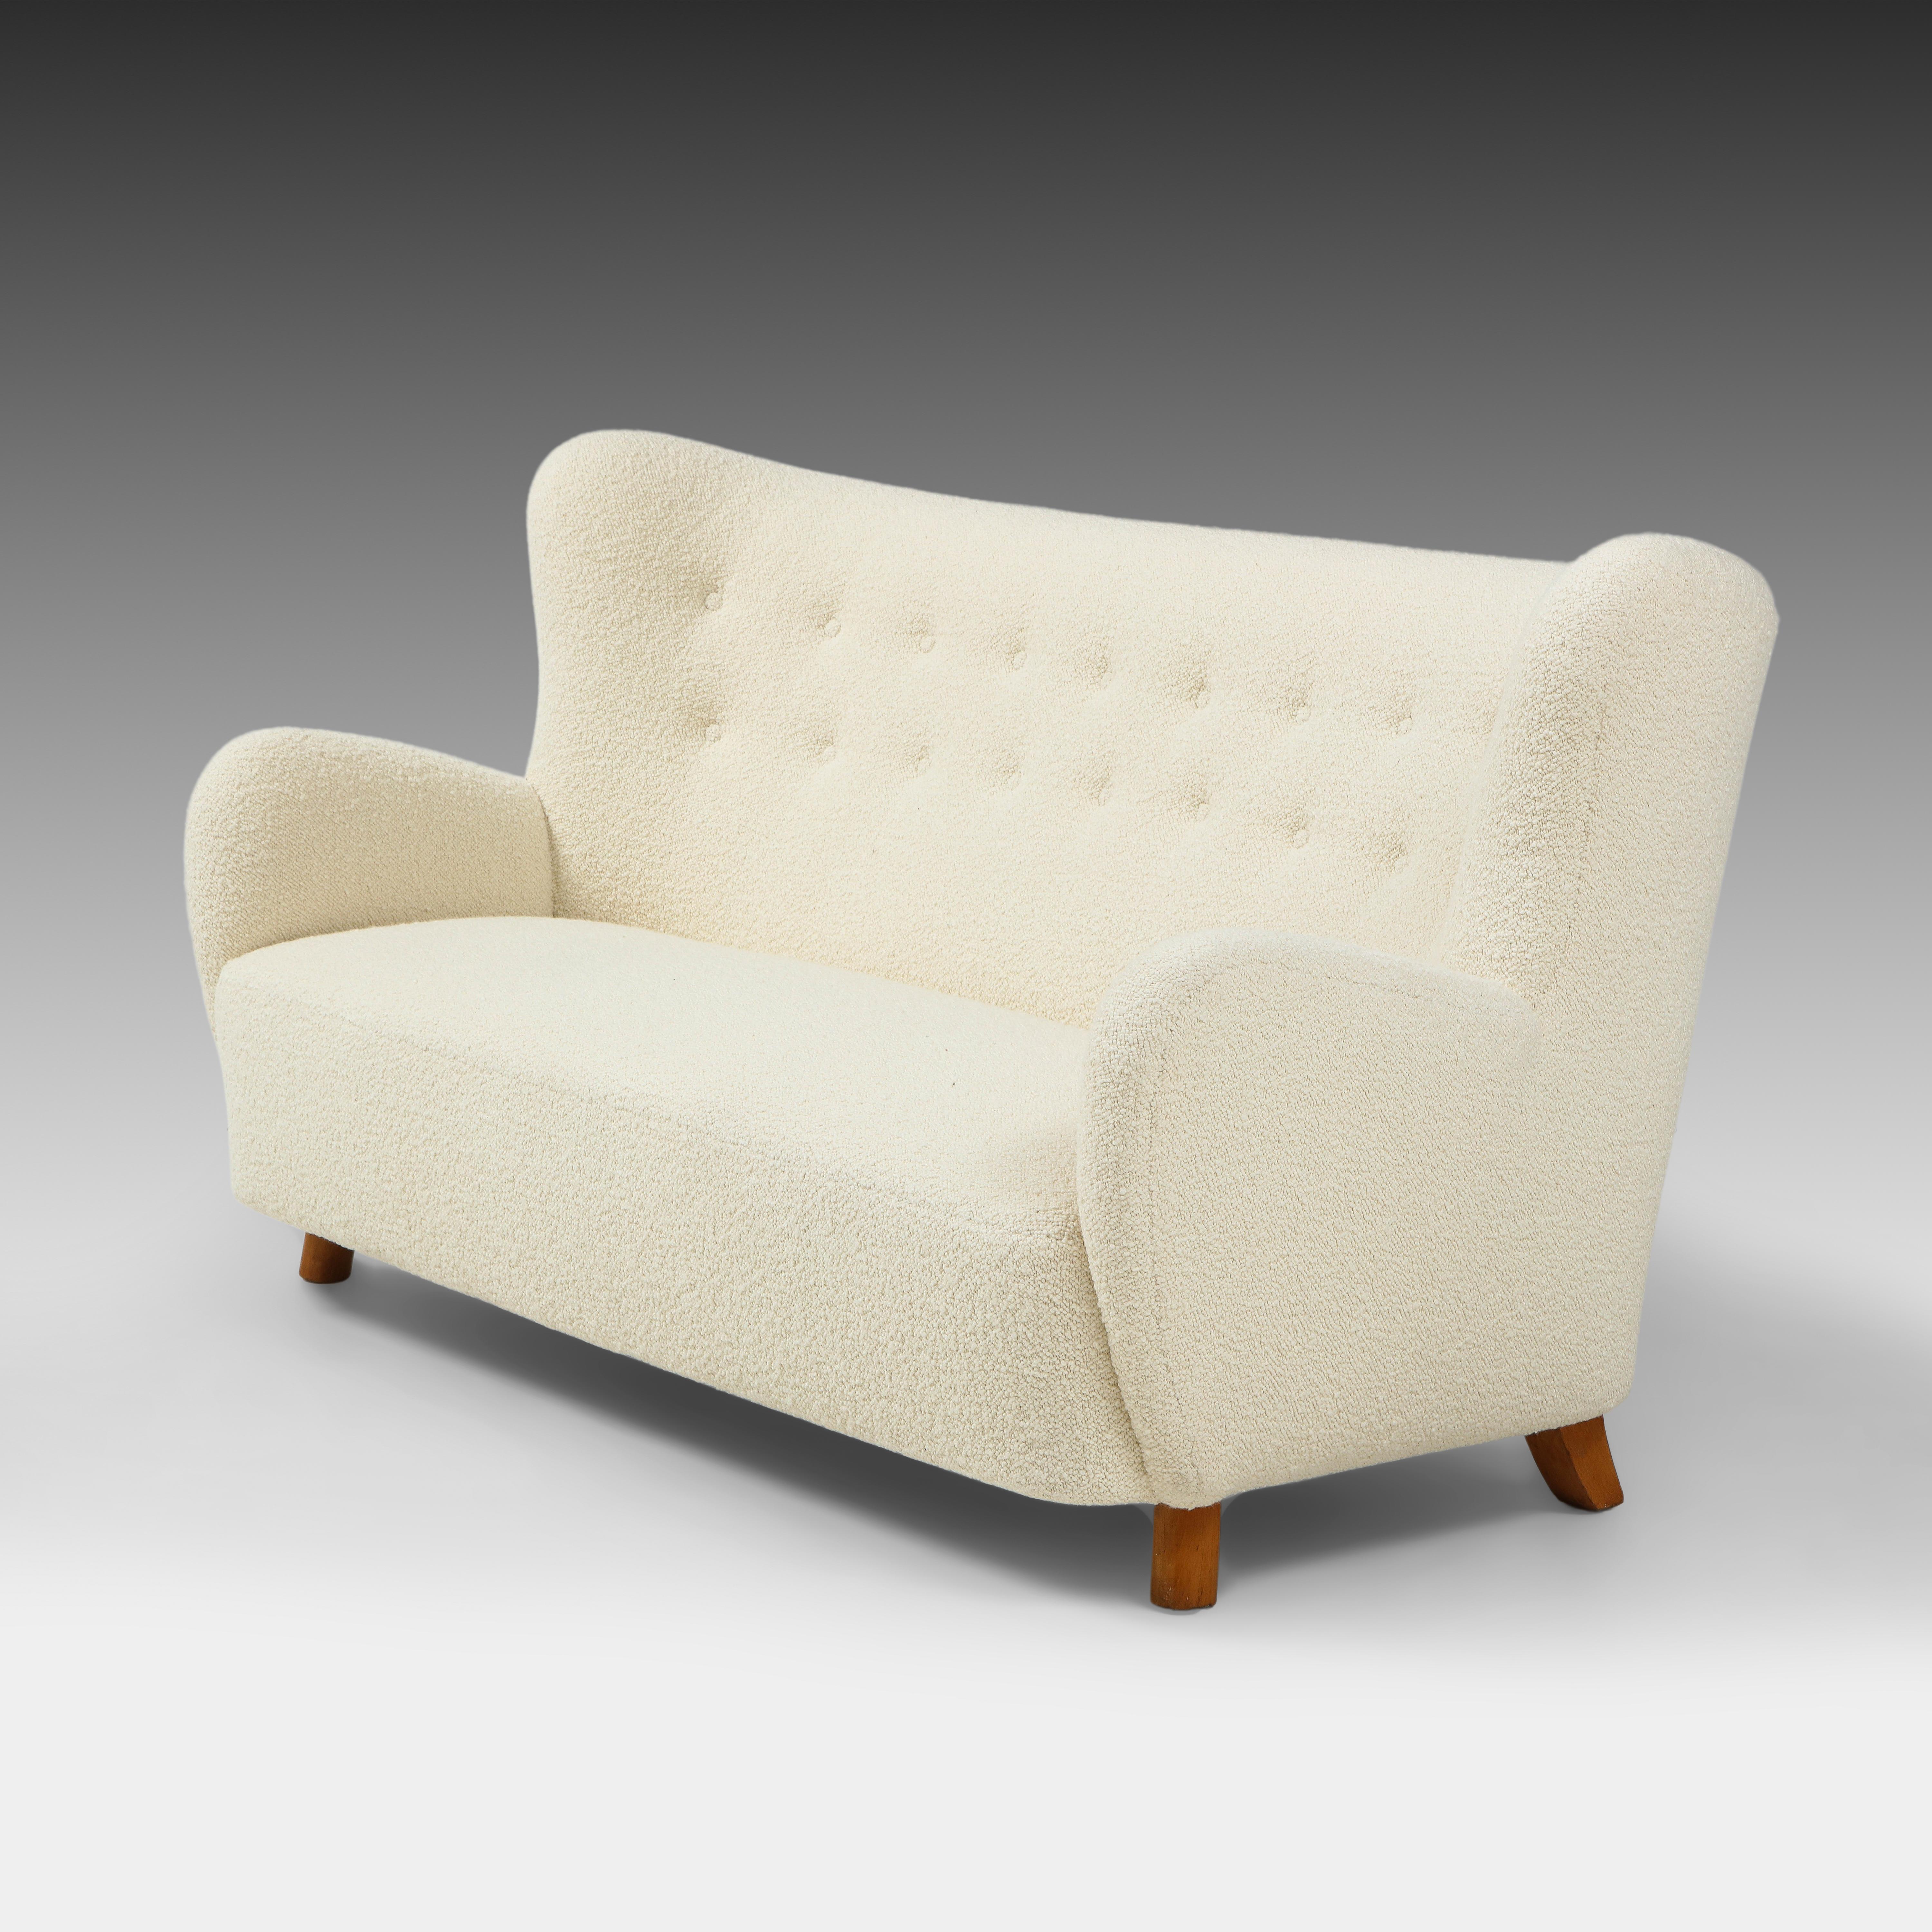 Mogens Lassen seltenes schönes Modern Scandinavian Sofa in elfenbeinfarbenem Bouclé mit leicht geschwungener und getufteter Rückenlehne und geschwungenen Armlehnen auf gebeizten Buchenholzbeinen. Dieses ikonische dänische Sofa der Moderne aus den